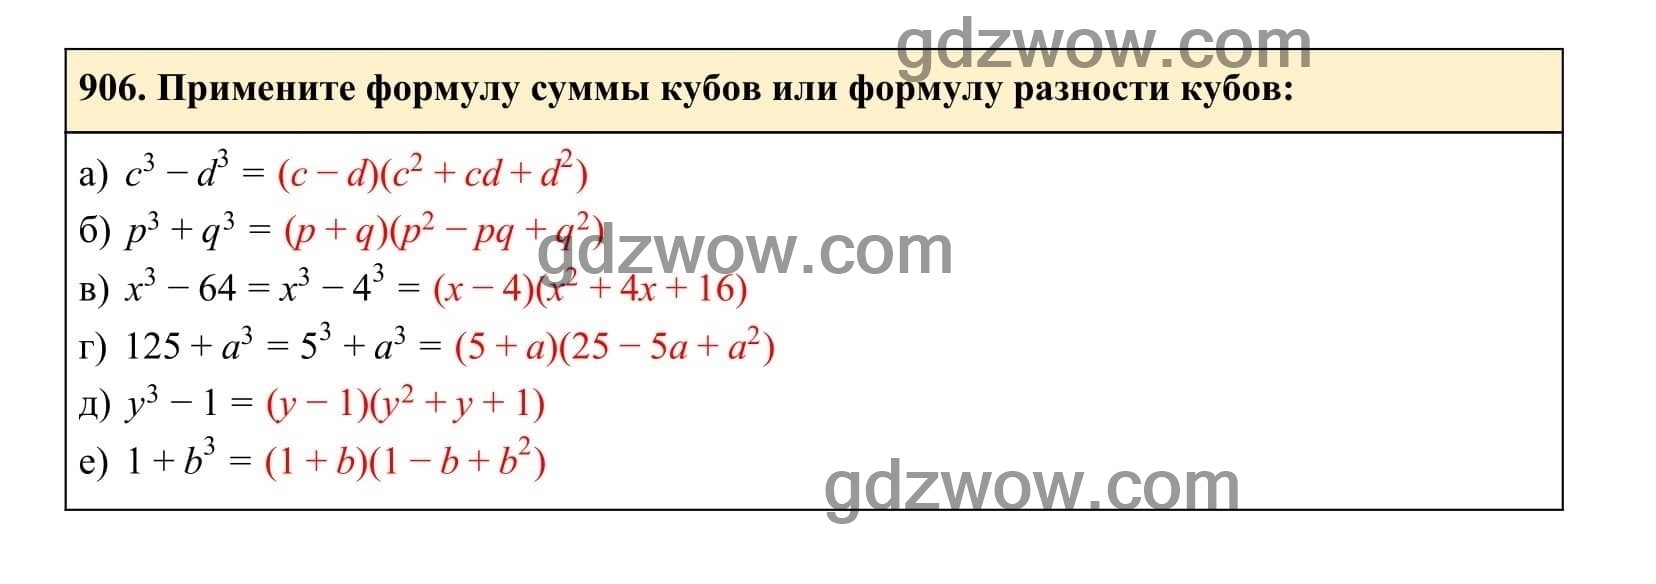 Упражнение 906 - ГДЗ по Алгебре 7 класс Учебник Макарычев (решебник) - GDZwow